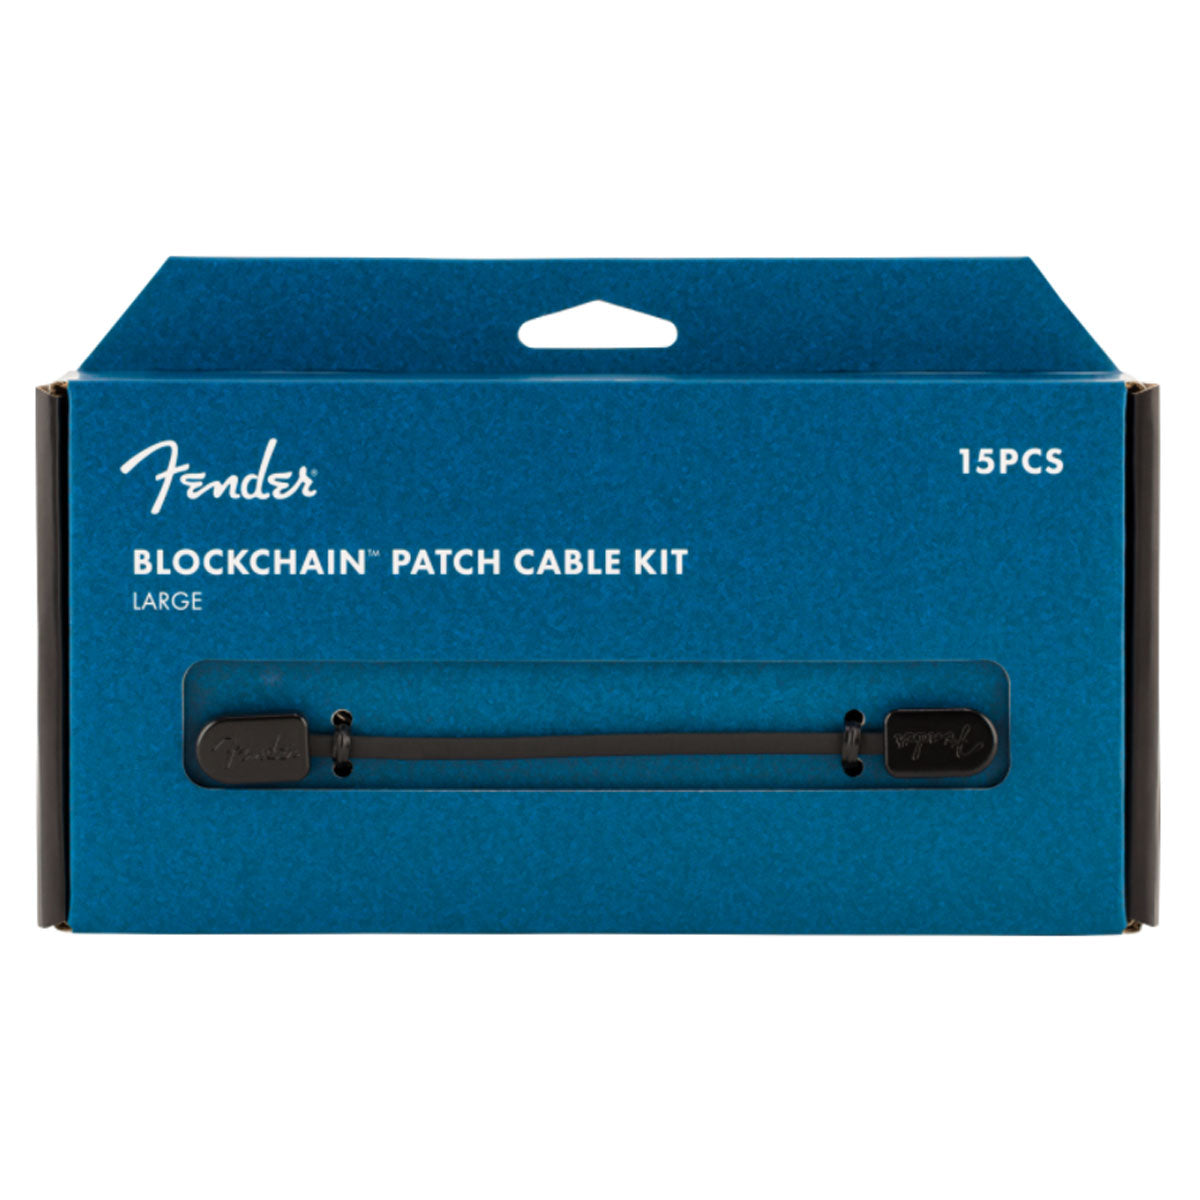 Fender Blockchain Patch Cable Kit Black Large - 0990825602